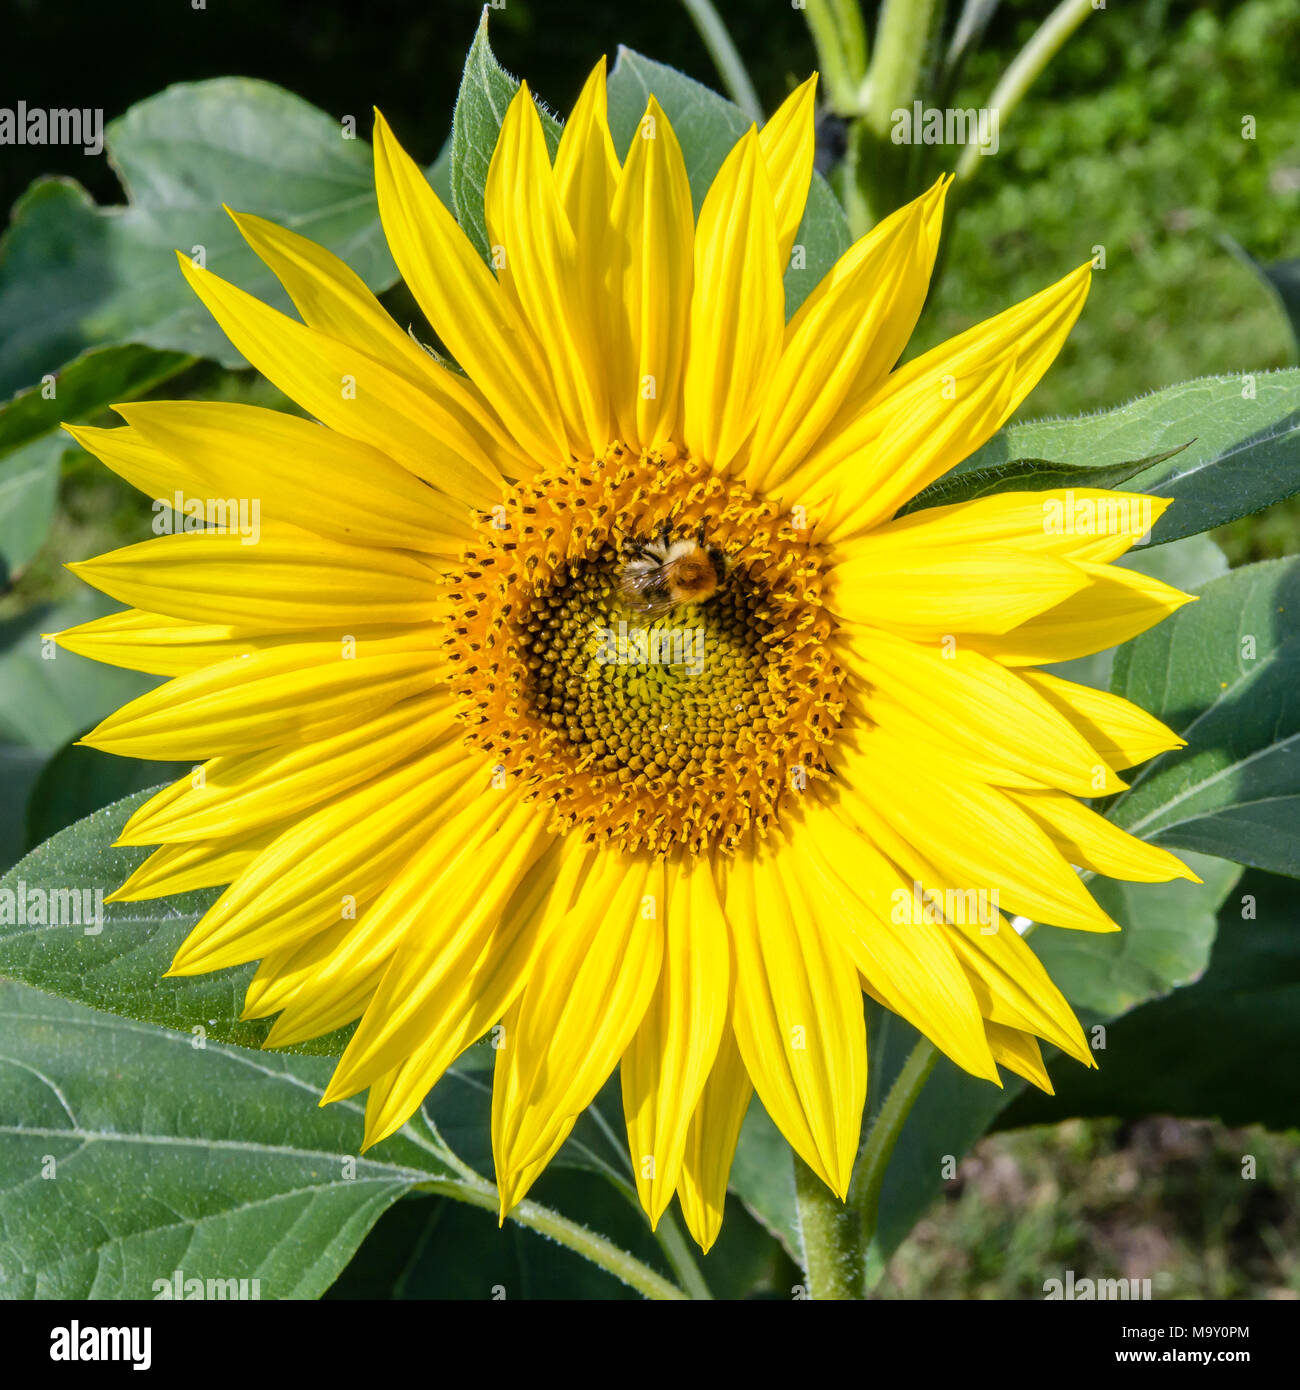 Vue rapprochée de la corolle jaune vif d'une tête de tournesol avec une abeille venant butiner ses fleurs du disque. Banque D'Images